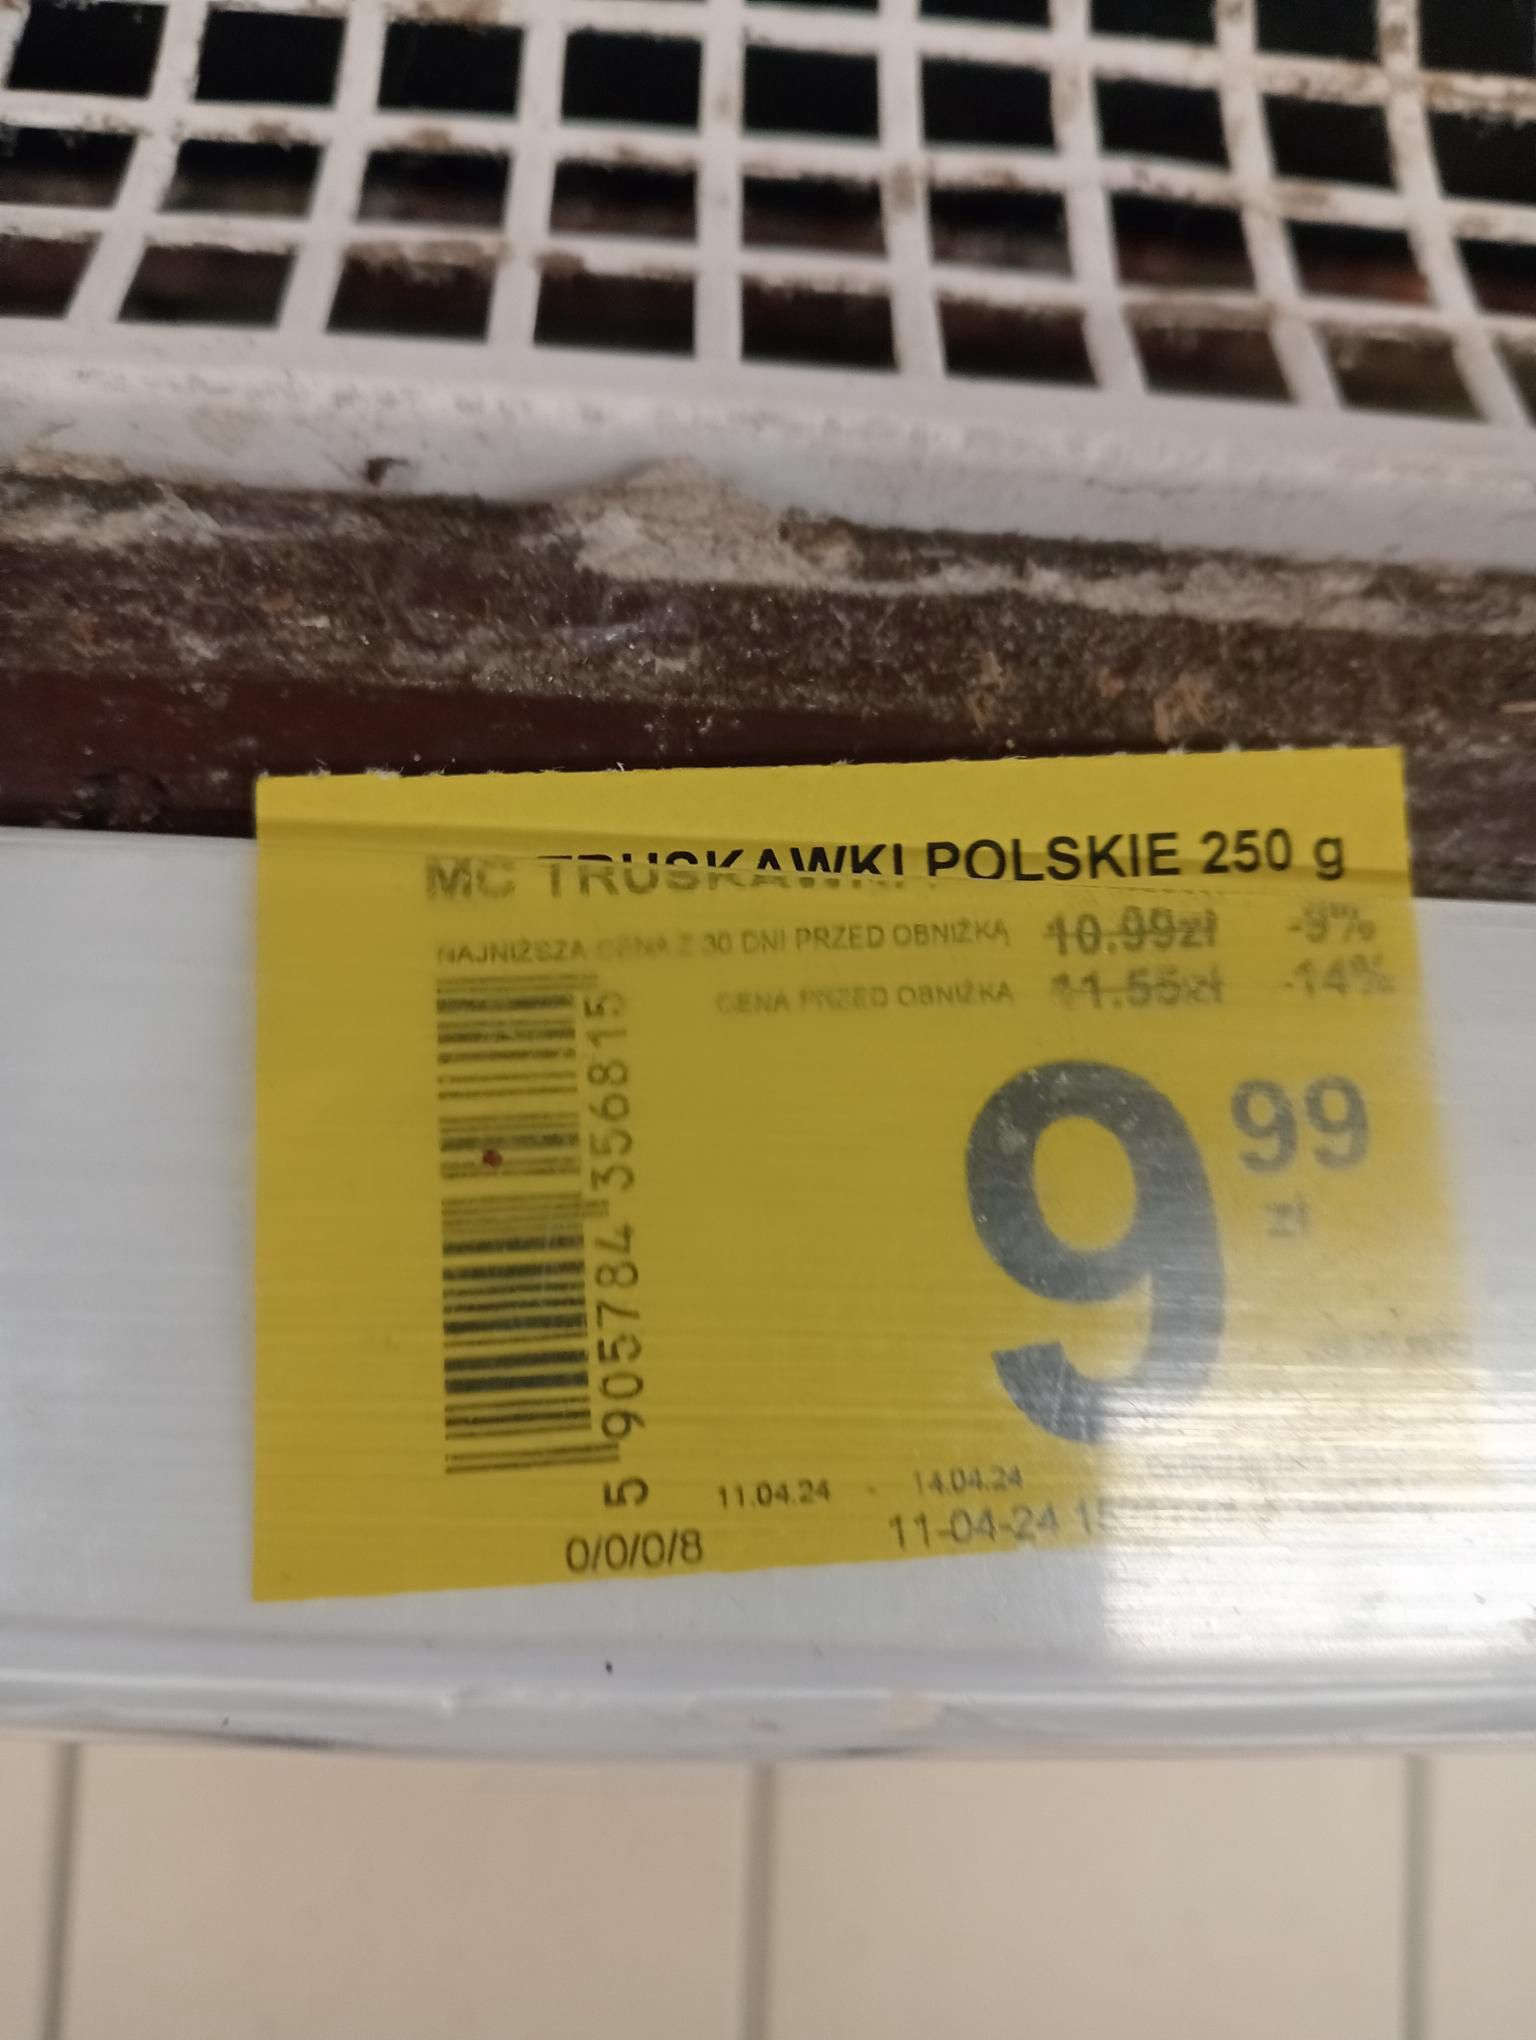 polskie truskawki trafiły do sklepów. ich cena powala